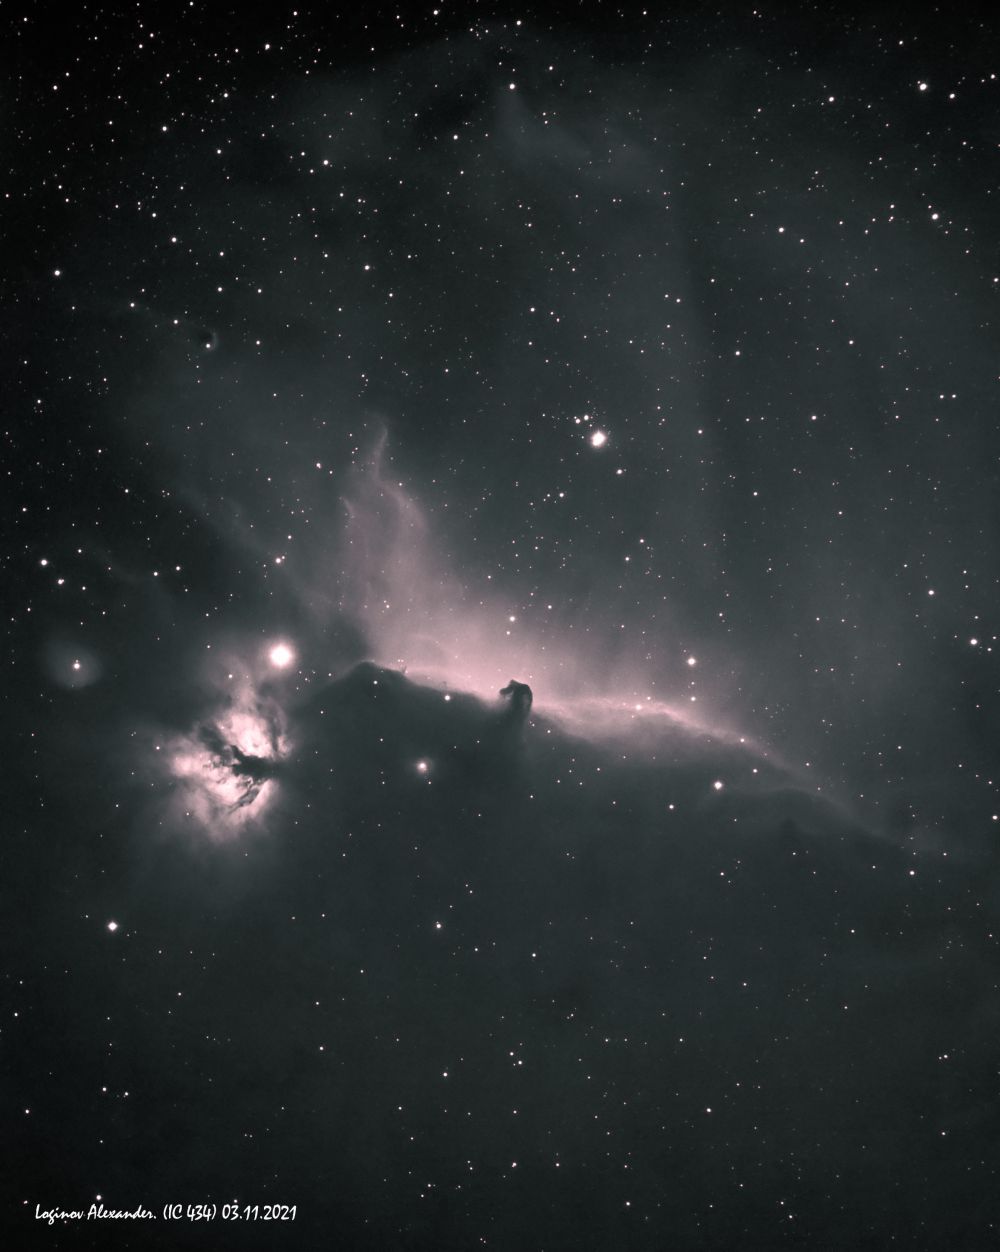 Horsehead Nebula (IC434) only Ha